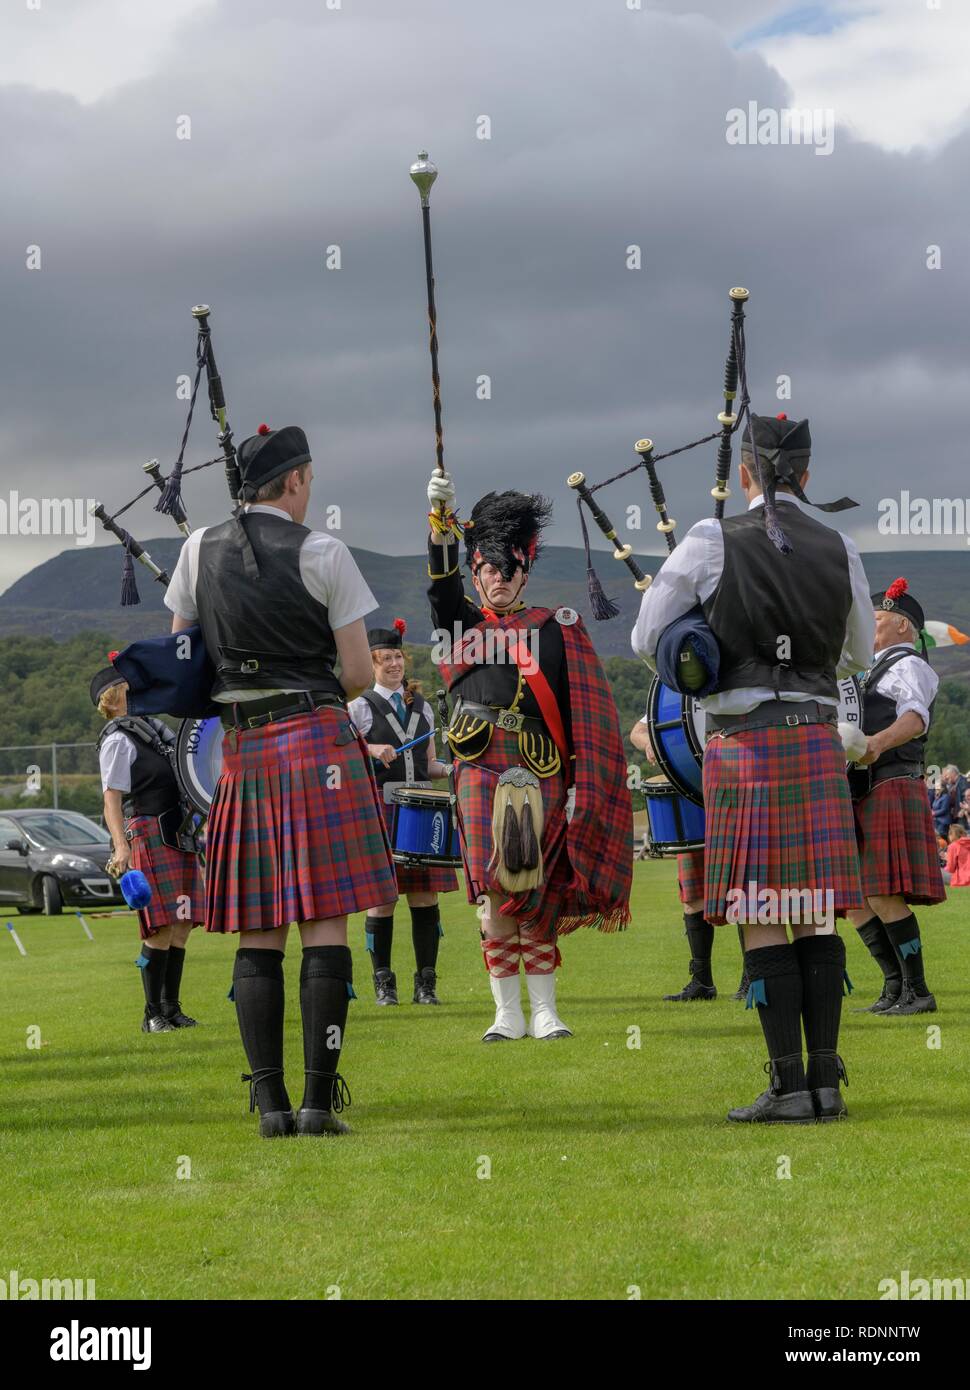 Bande di cornamuse concorrenza, Giochi delle Highland, Newtonmore, Scotland, Regno Unito Foto Stock